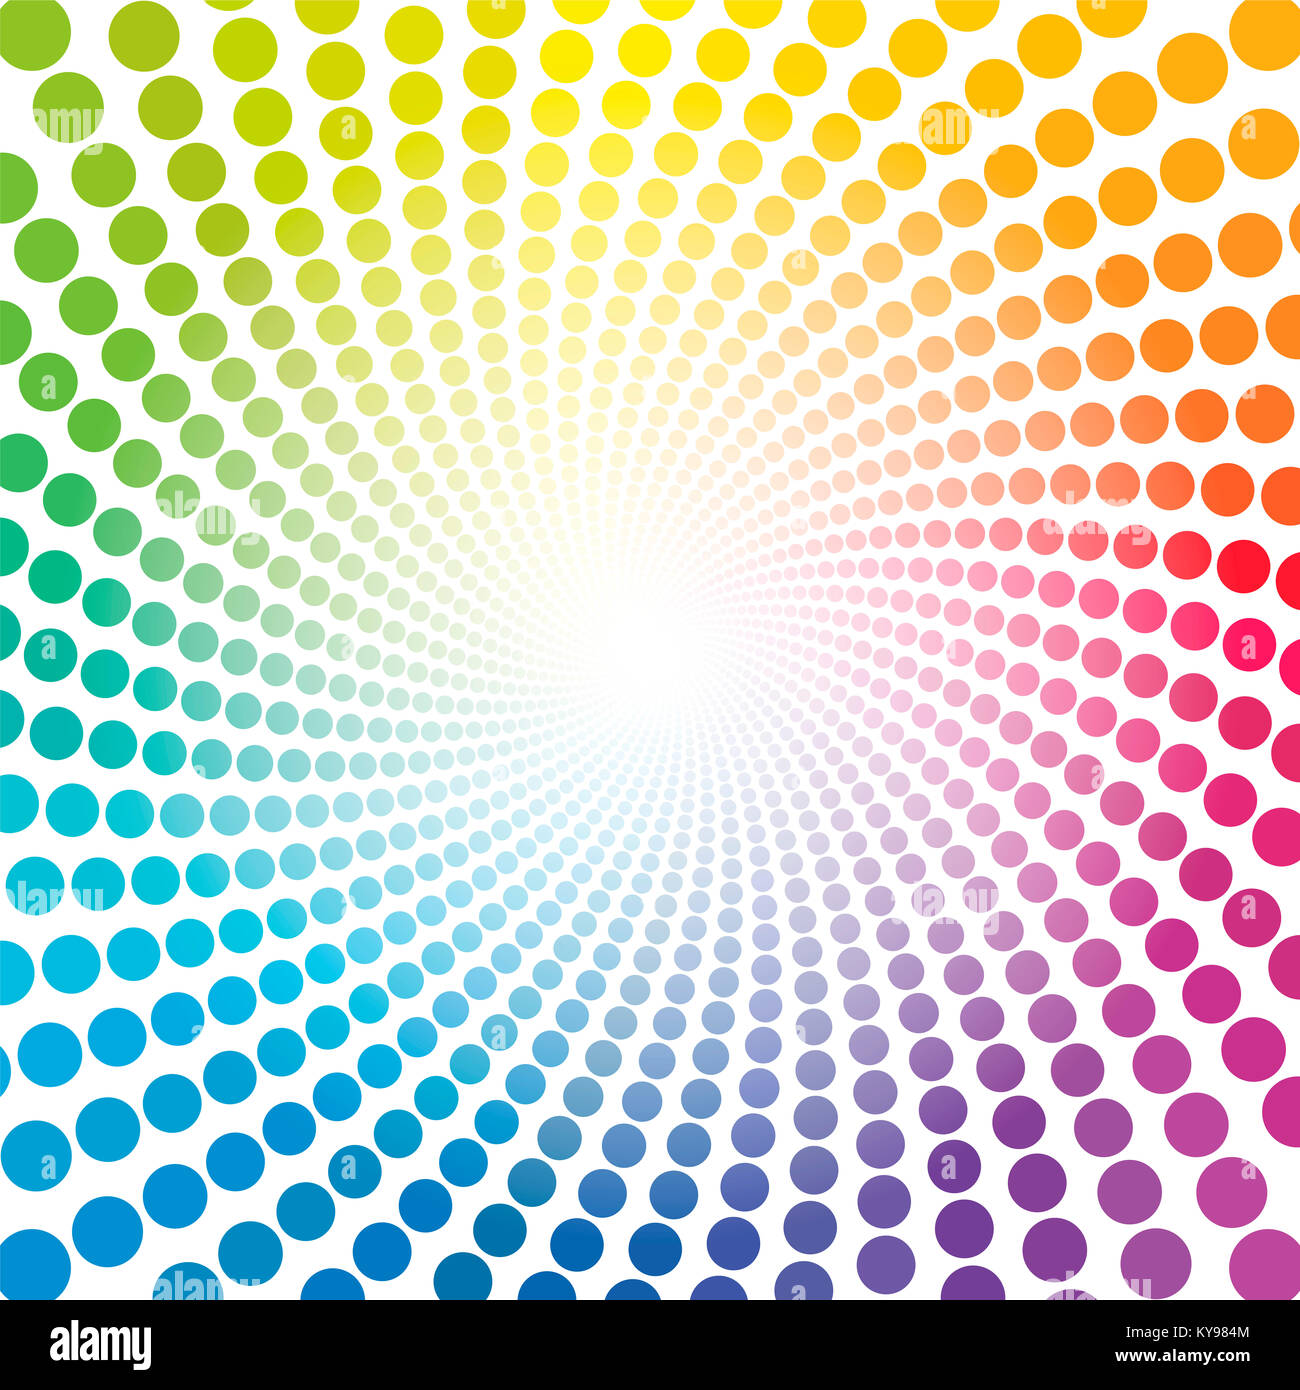 Modèle en spirale de couleur arc-en-ciel - tunnel avec Light Centre - illustration fond circulaire torsadée, hypnotique et psychédélique. Banque D'Images